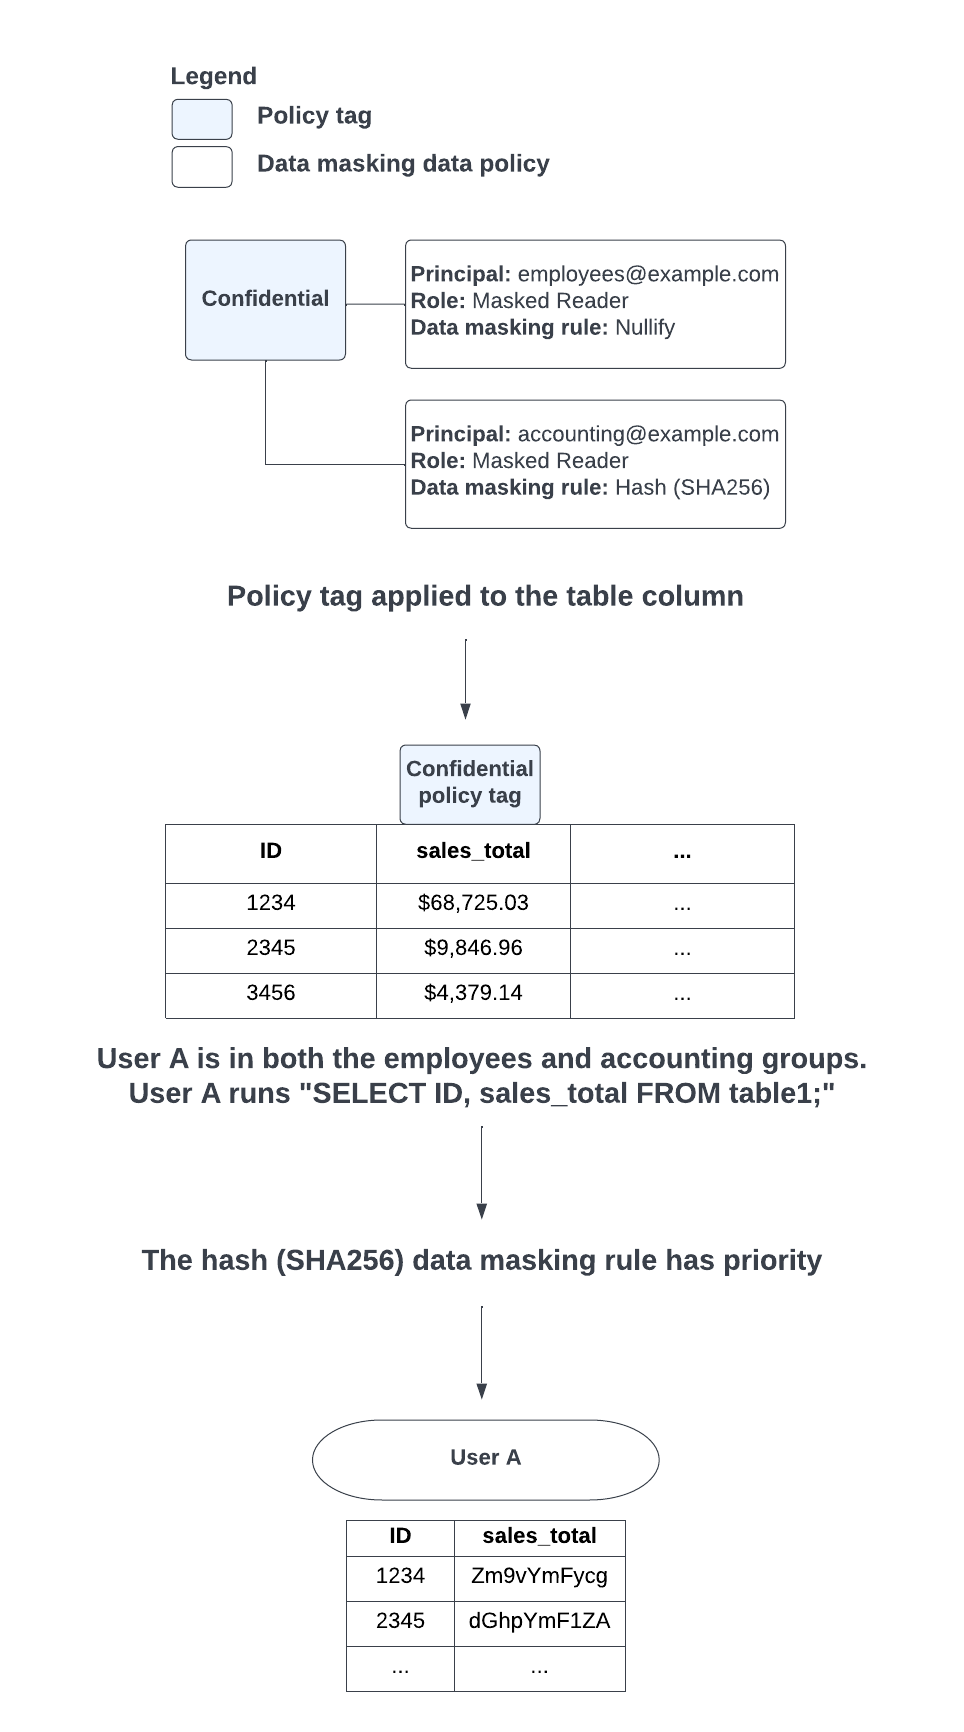 Wenn aufgrund der Gruppen, in denen sich ein Nutzer befindet, ein Konflikt zwischen der Anwendung der Null-Maskierung und den Hash-Datenmaskierungsregeln (SHA-256) besteht, wird die Hash-Datenmaskierungsregel priorisiert.